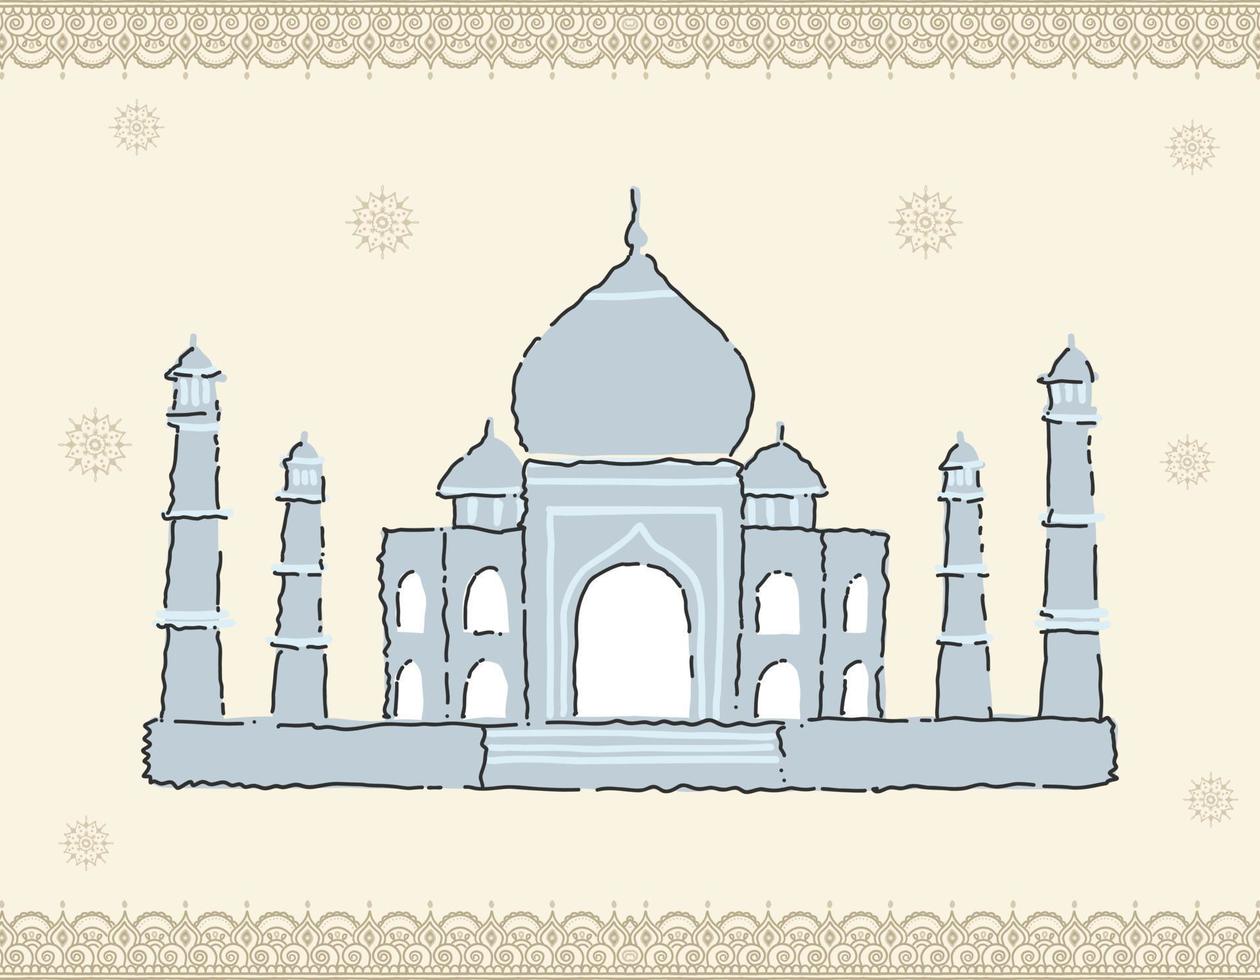 taj mahal, india. vista india más famosa. edificio arquitectónico. atracciones turísticas famosas. mausoleo-mezquita tradicional en agra vector